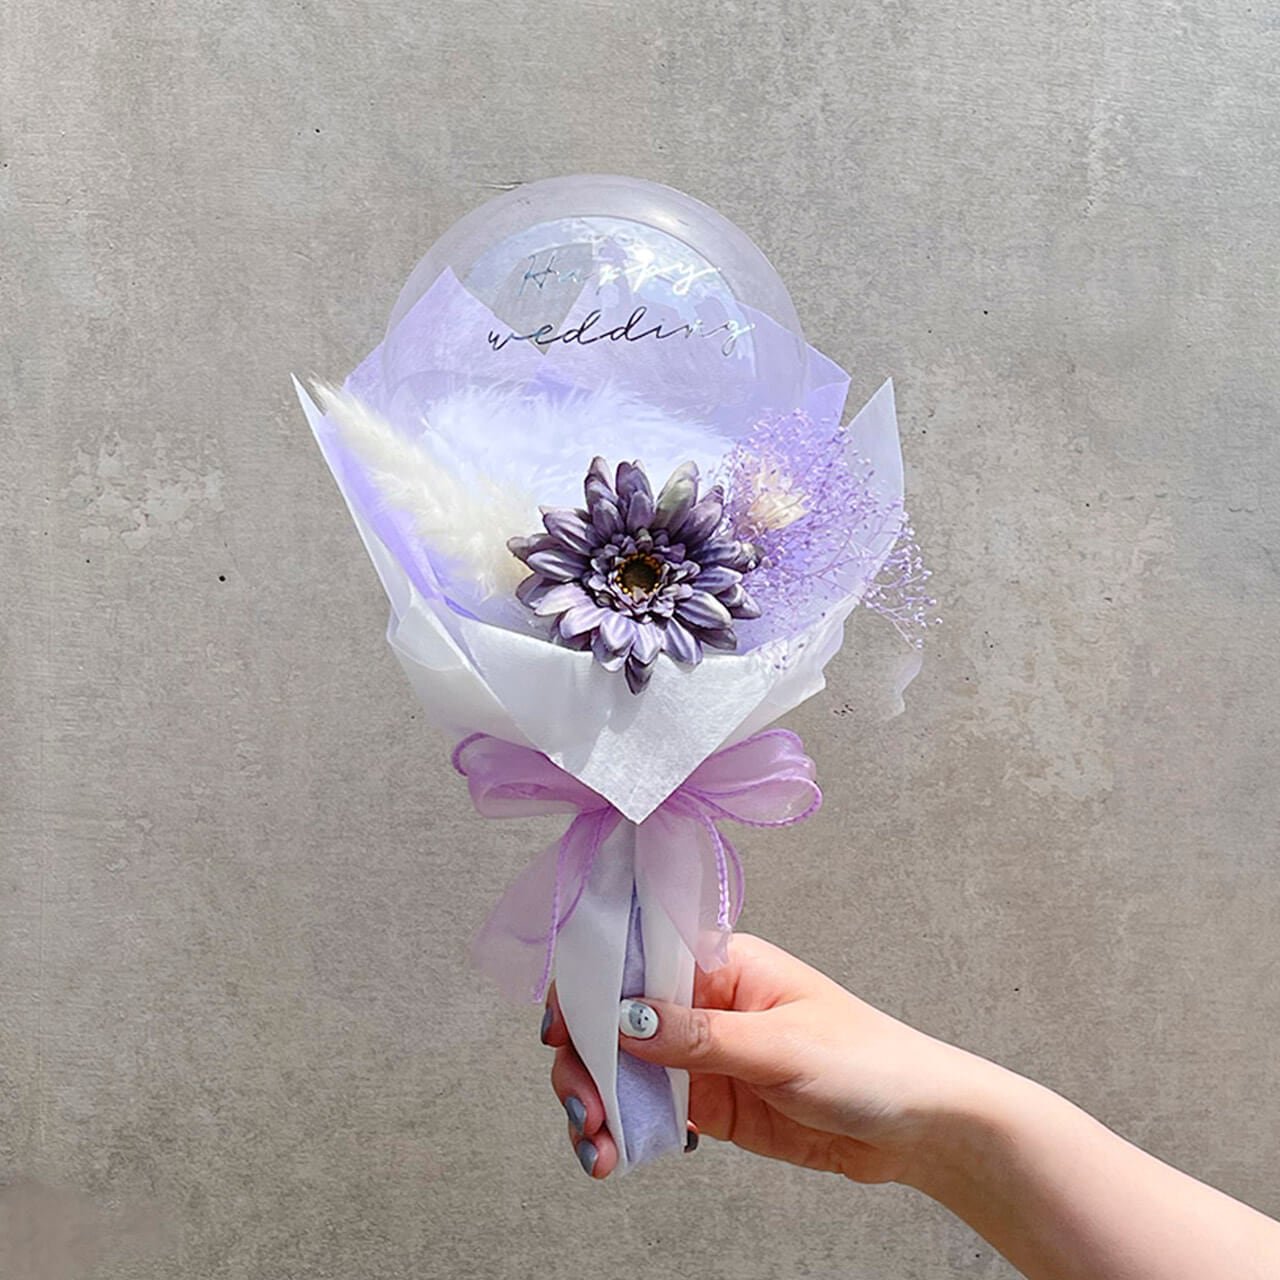 Stella purple Mini Bouquet - Flower Balloon Bouquet - ステラ パープル フラワーバルーンブーケ  - チャビーバルーン 大阪 名古屋 滋賀にあるおしゃれなバルーン電報 バルーン装飾 バルーンギフトのことならチャビーバルーン